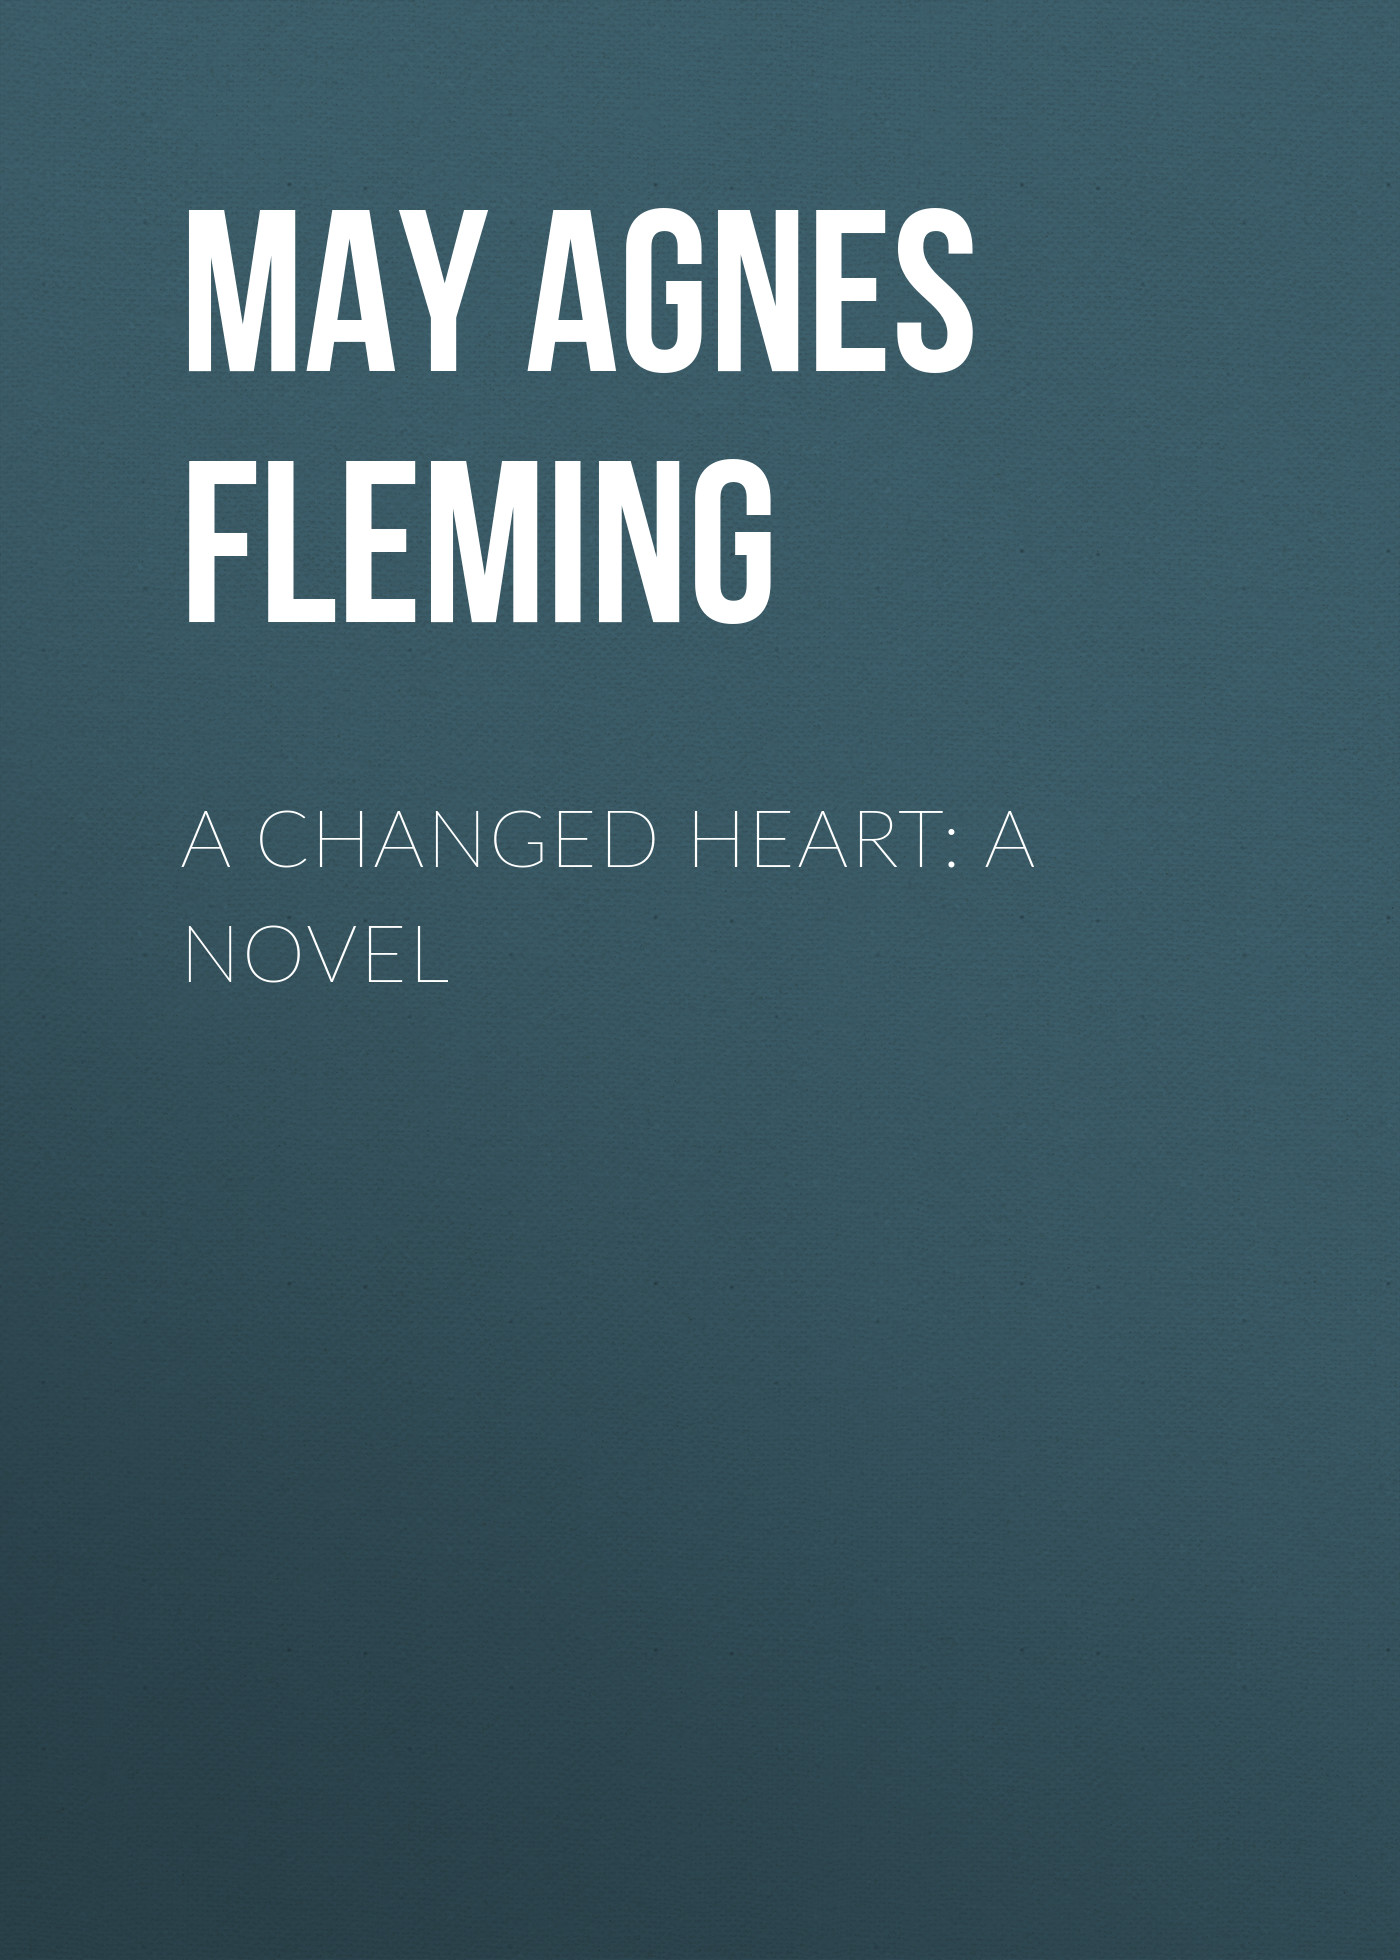 Книга A Changed Heart: A Novel из серии , созданная May Fleming, может относится к жанру Зарубежная старинная литература, Зарубежная классика, Зарубежная фантастика. Стоимость электронной книги A Changed Heart: A Novel с идентификатором 24727393 составляет 0 руб.